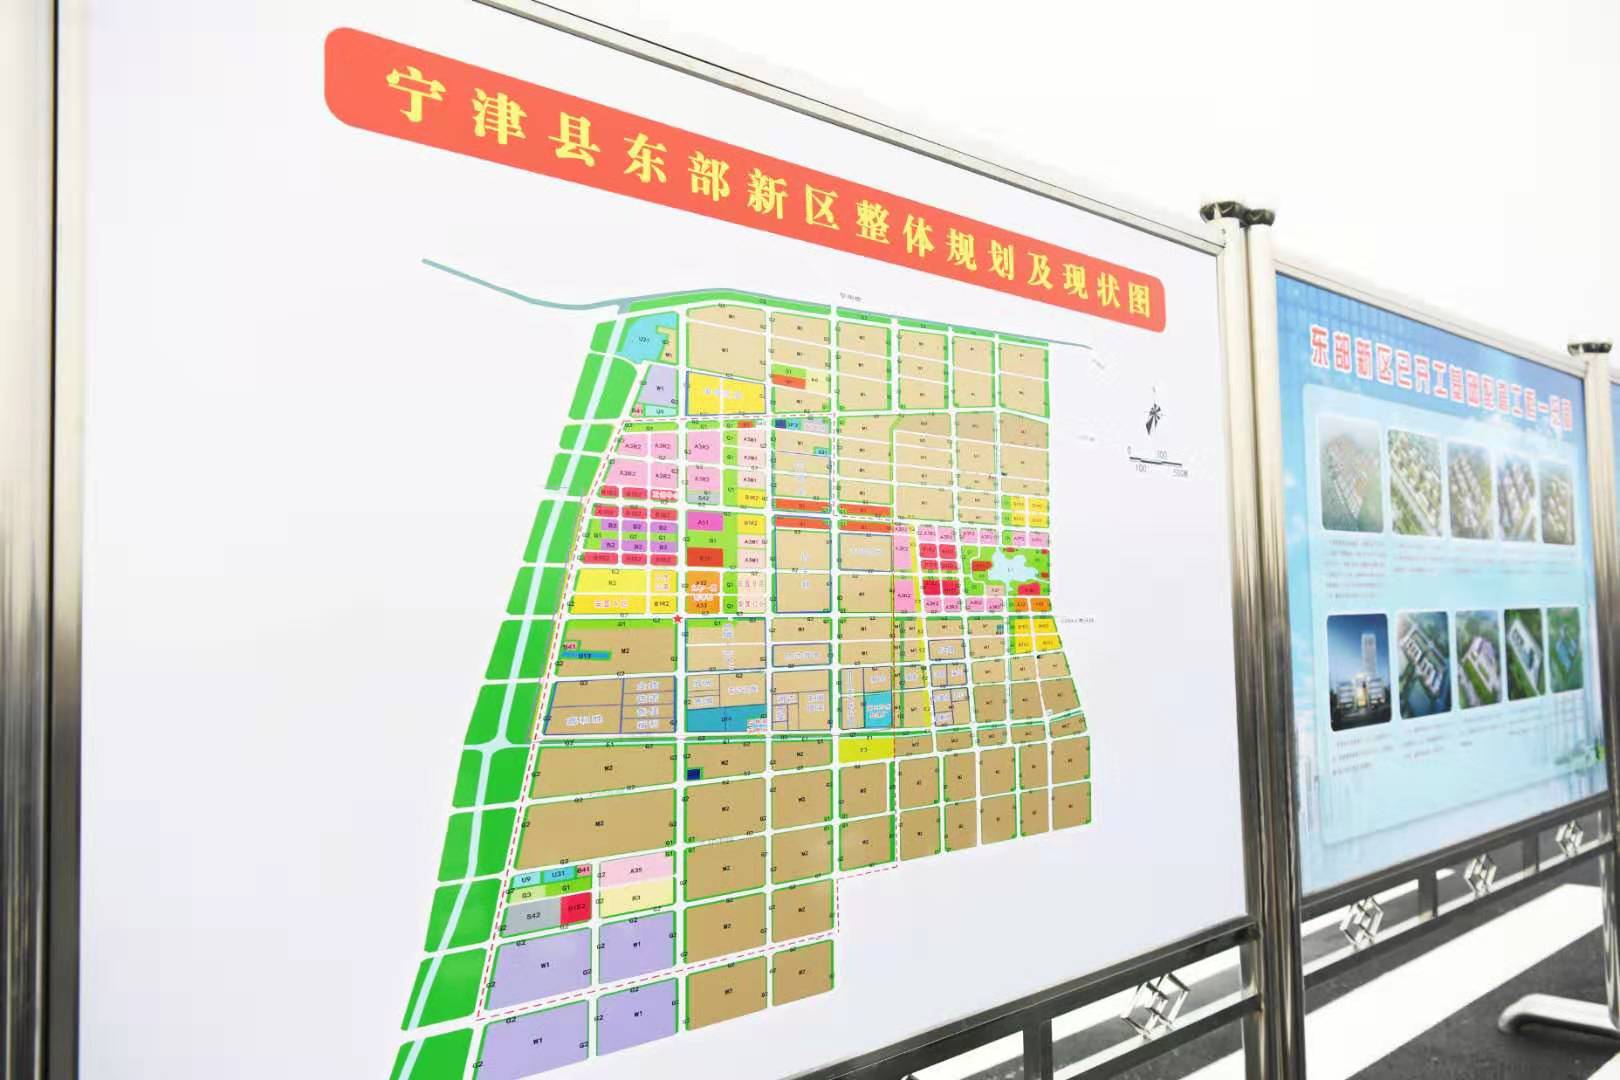 相信伴随新区基础设施,产业项目的陆续成型,宁津县将会呈现截然不同的